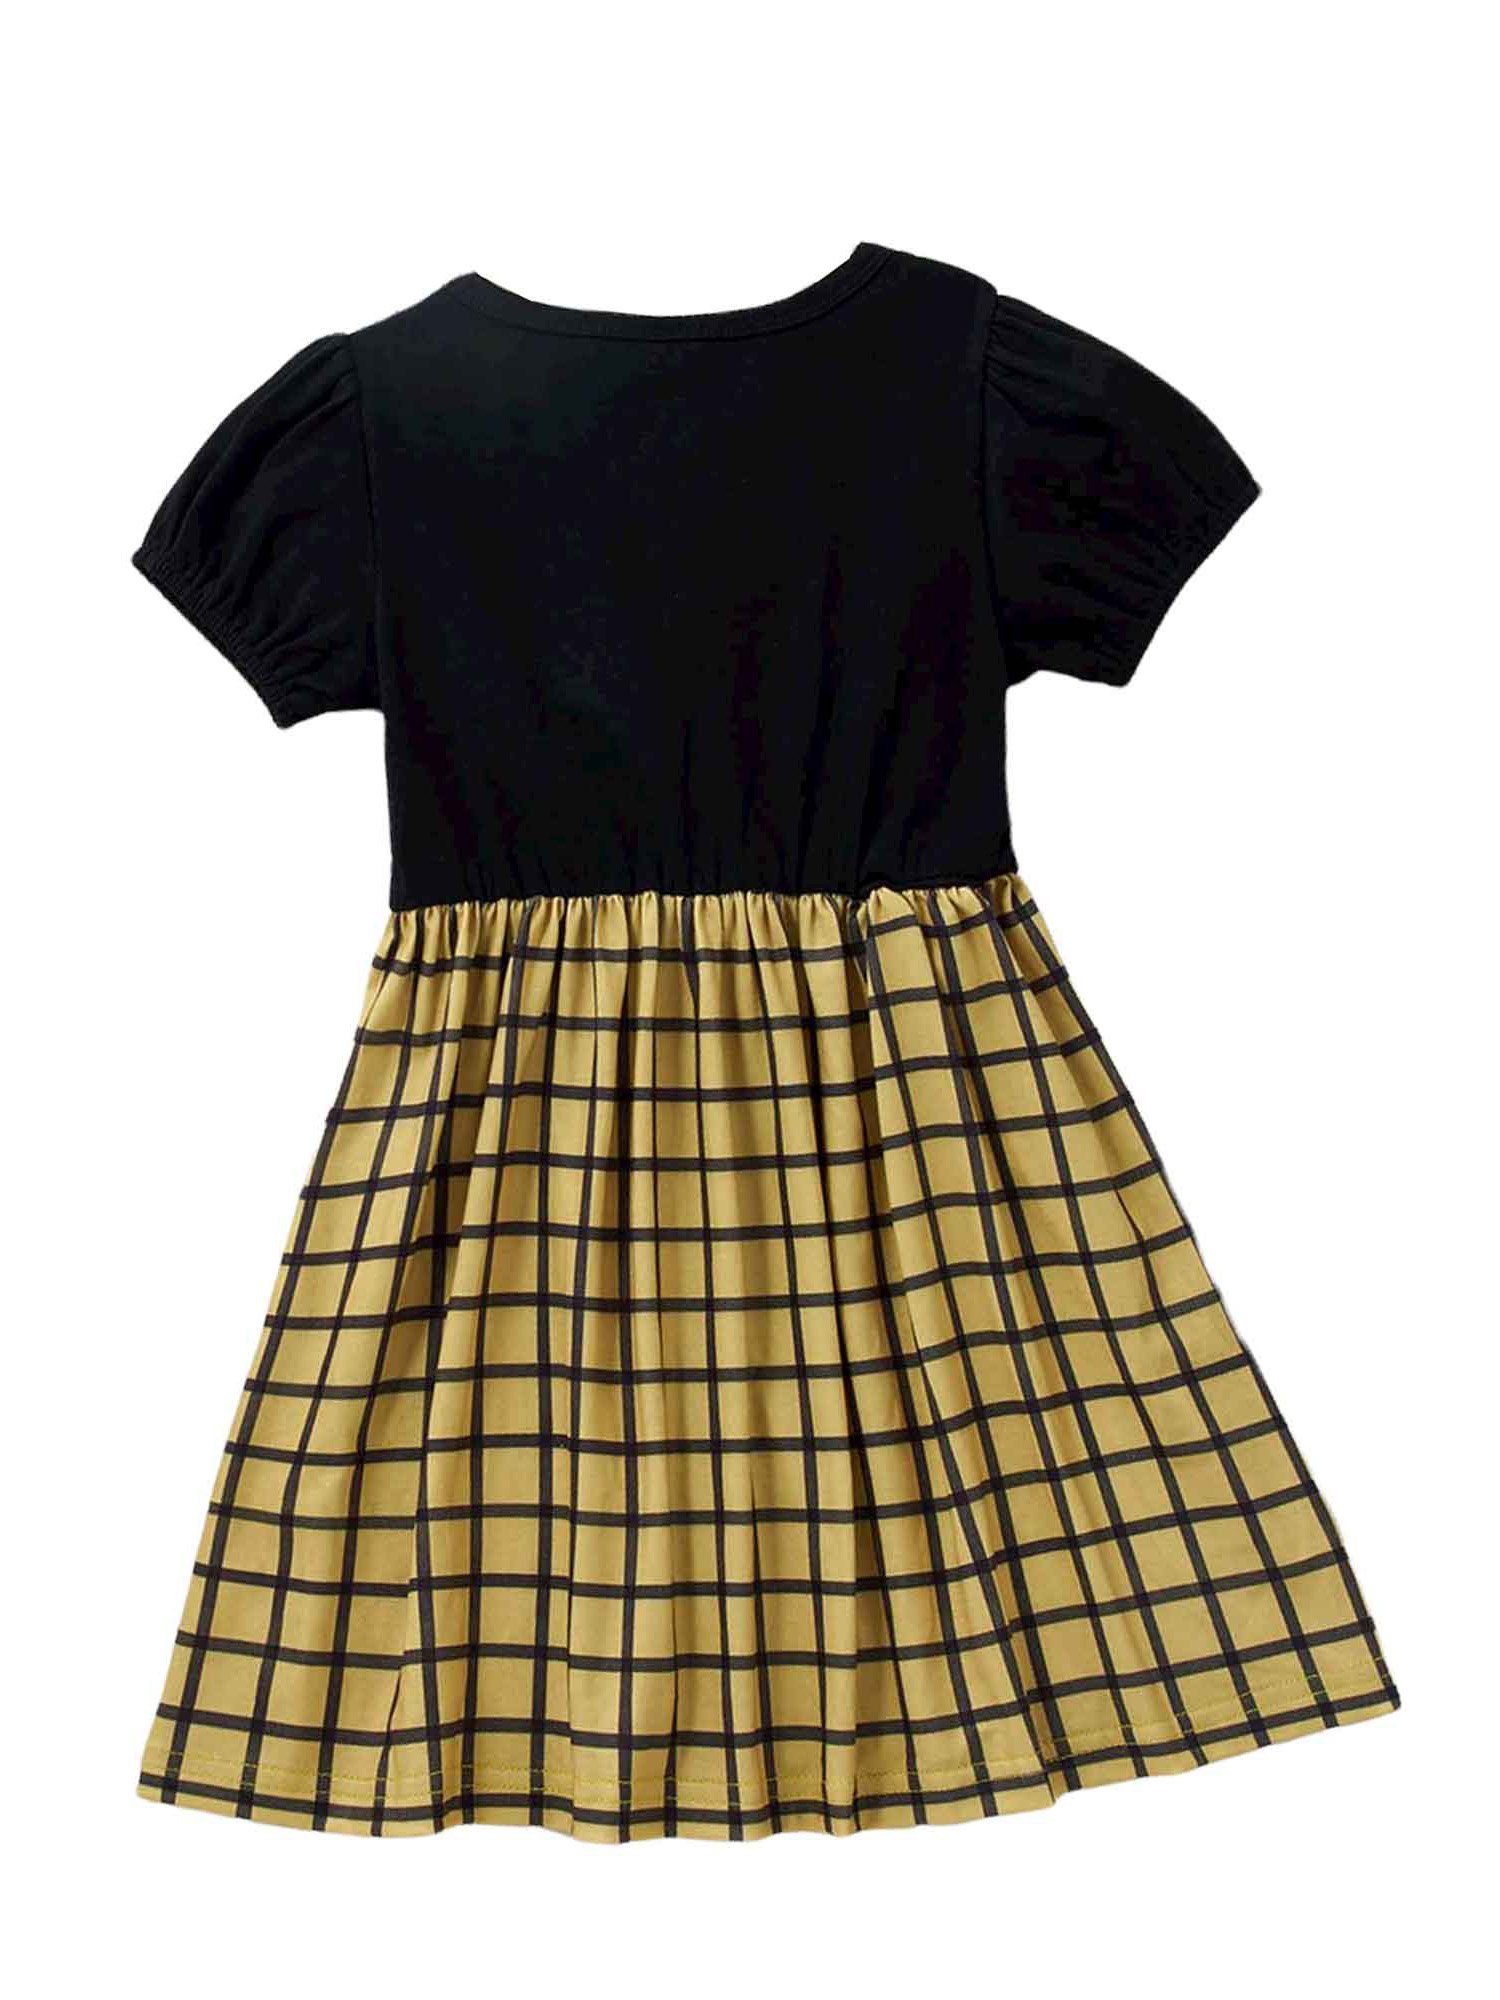 Kinder Mädchen (Gr. 50 - 92) LAPA A-Linien-Kleid LAPA Mädchenkleid, Kariertes Kleid mit kurzen Ärmeln